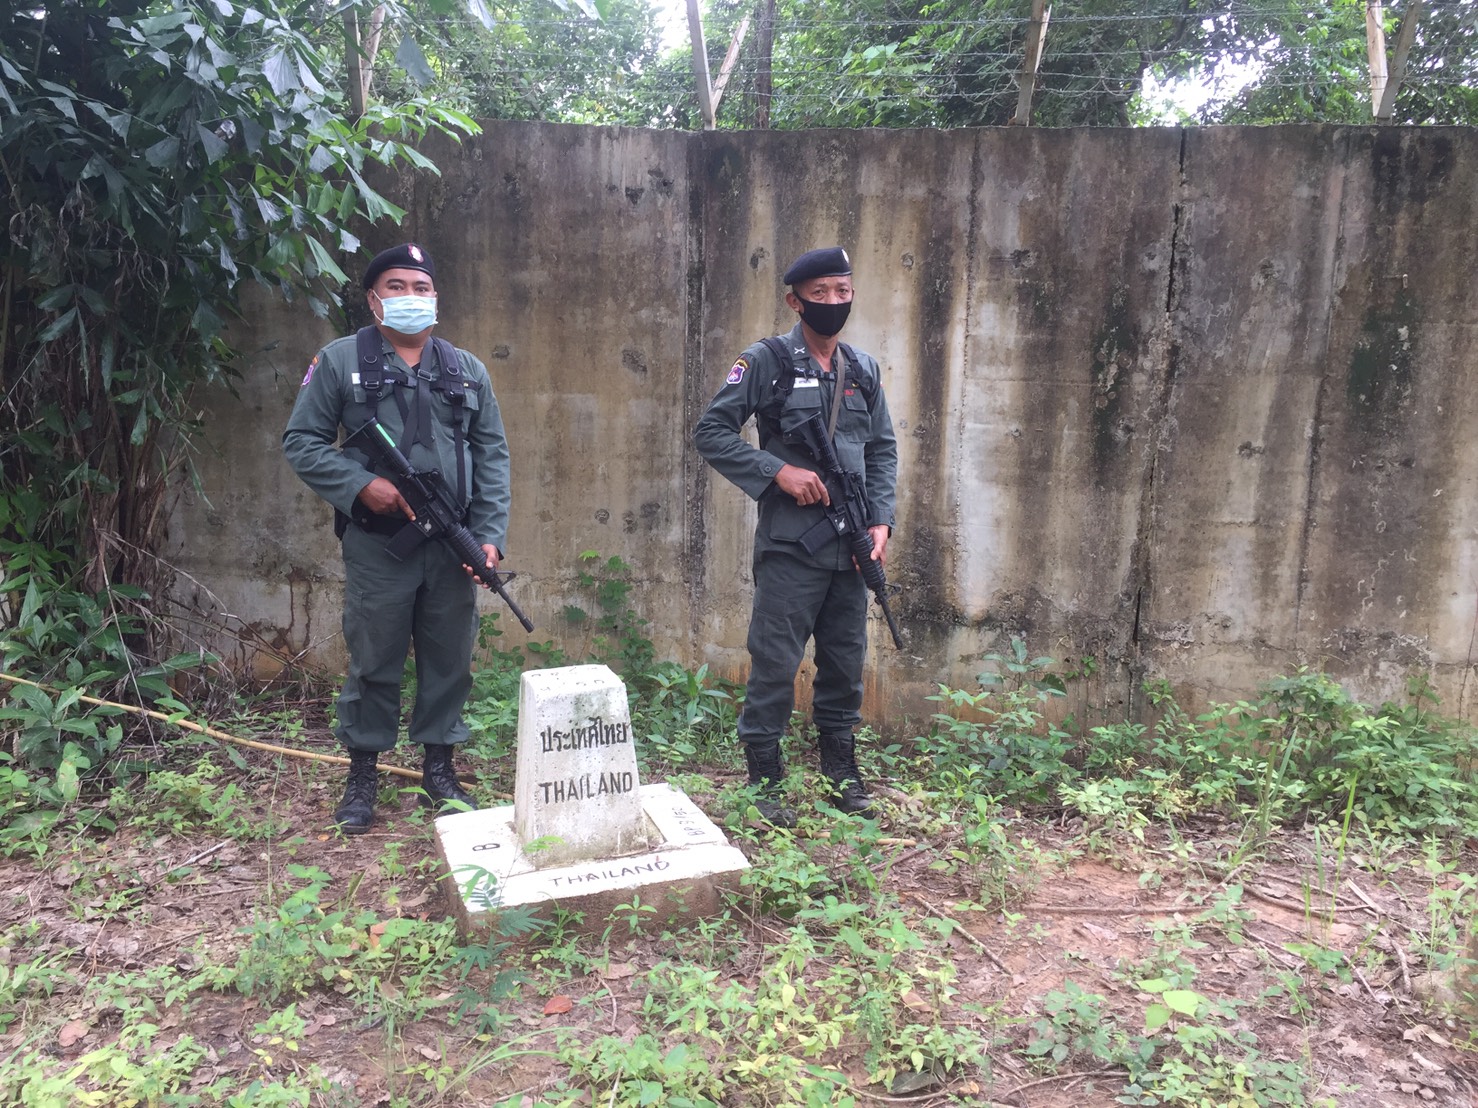  เจ้าหน้าที่ออกลาดตระเวนคุมเข้มแนวชายแดนไทย-มาเลเซีย ของจังหวัดสงขลา ป้องกันคนลักลอบเข้ามาโดยไม่ผ่านการตรวจ โควิด-19